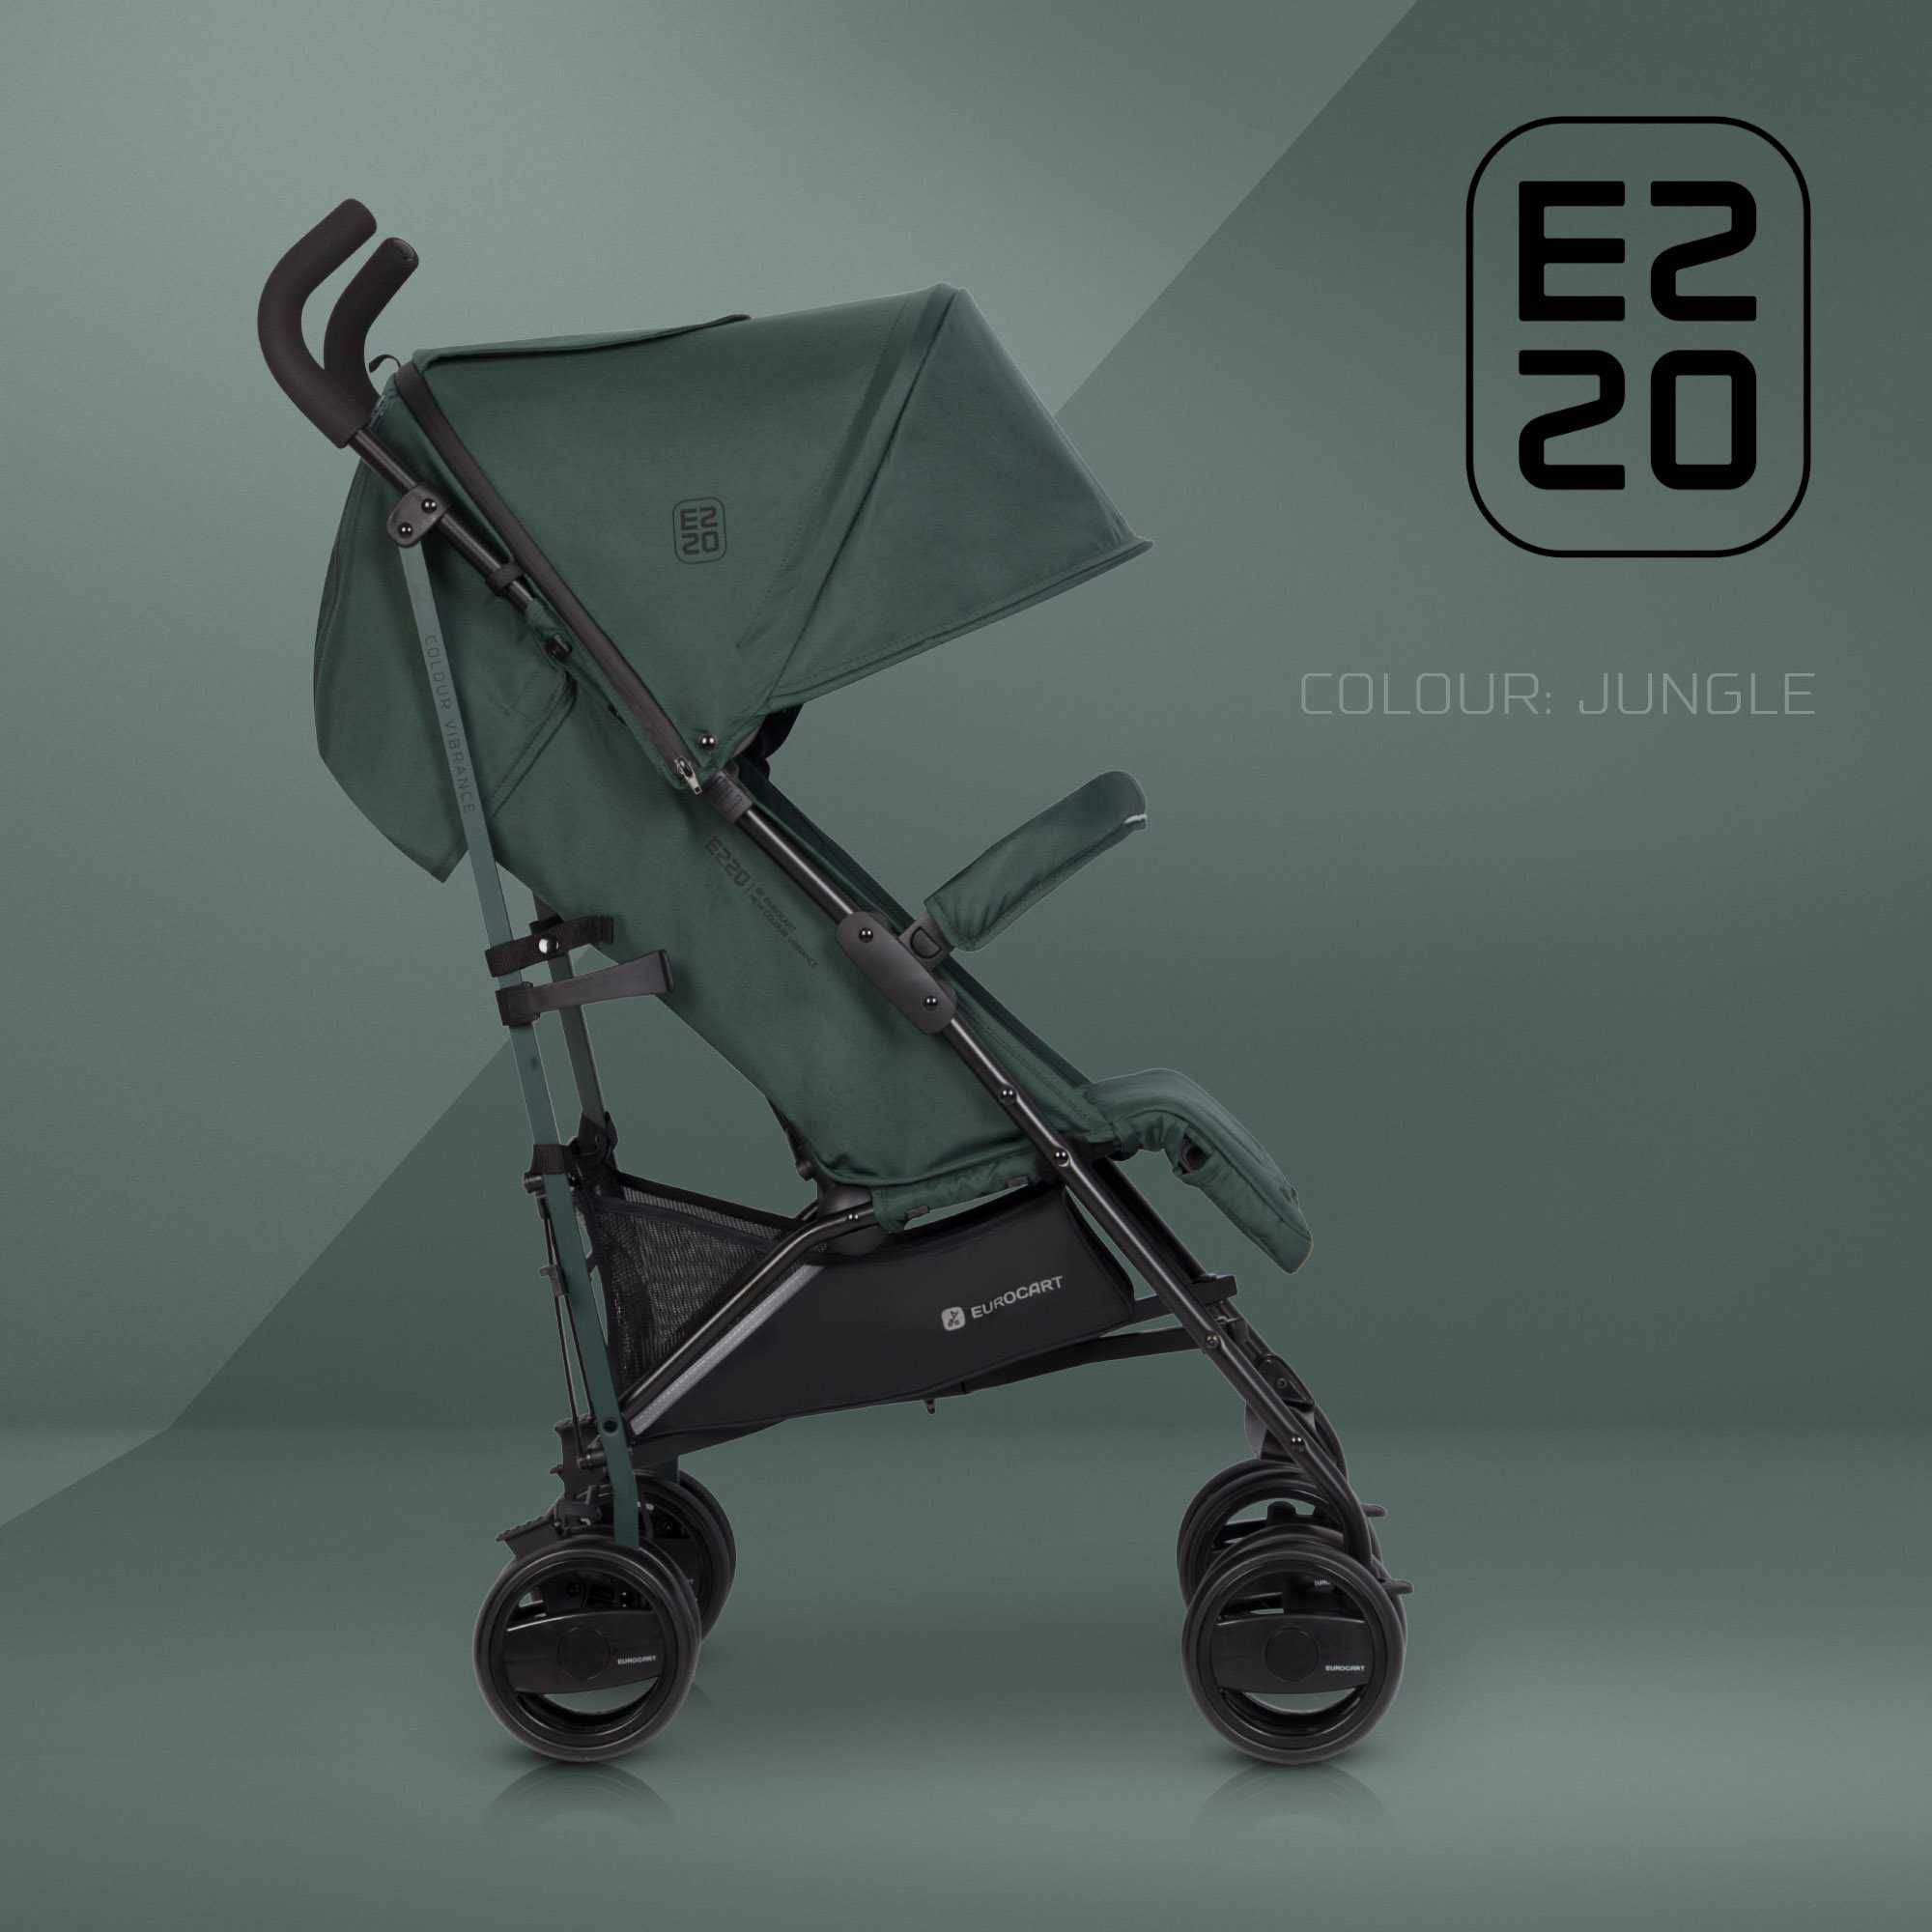 Euro-Cart EZZO, wózek dziecięcy typu parasolka, różne kolory